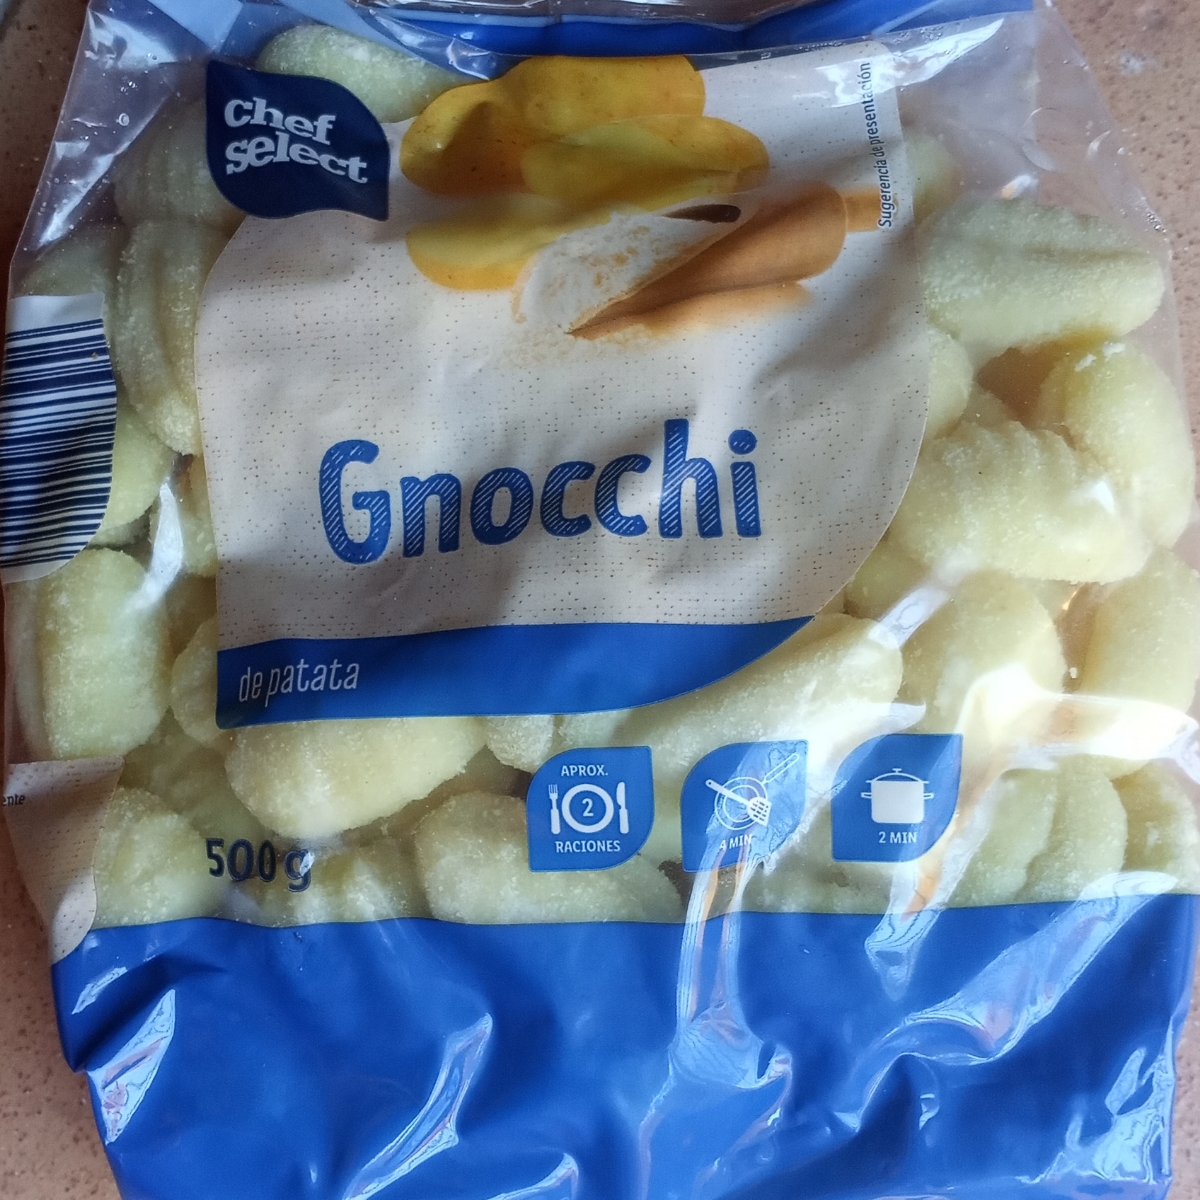 patata de Select | abillion Chef Gnocchi Review